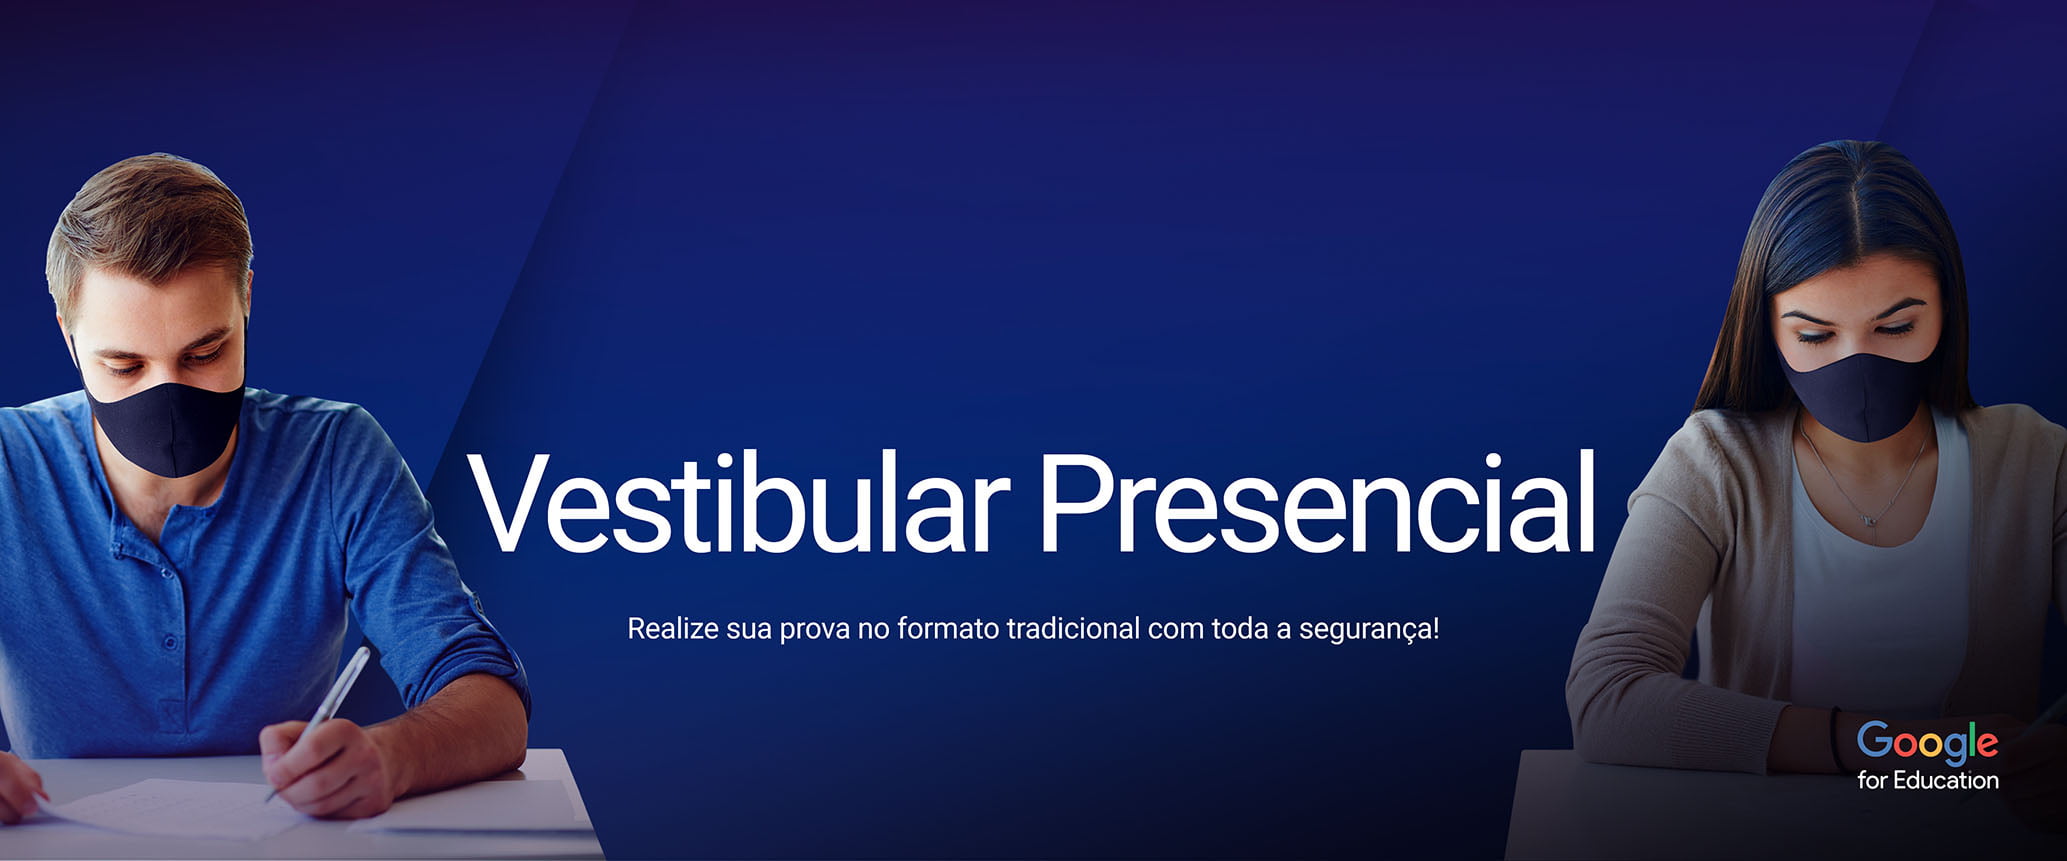 Vestibular-presencial_slide_home (1)